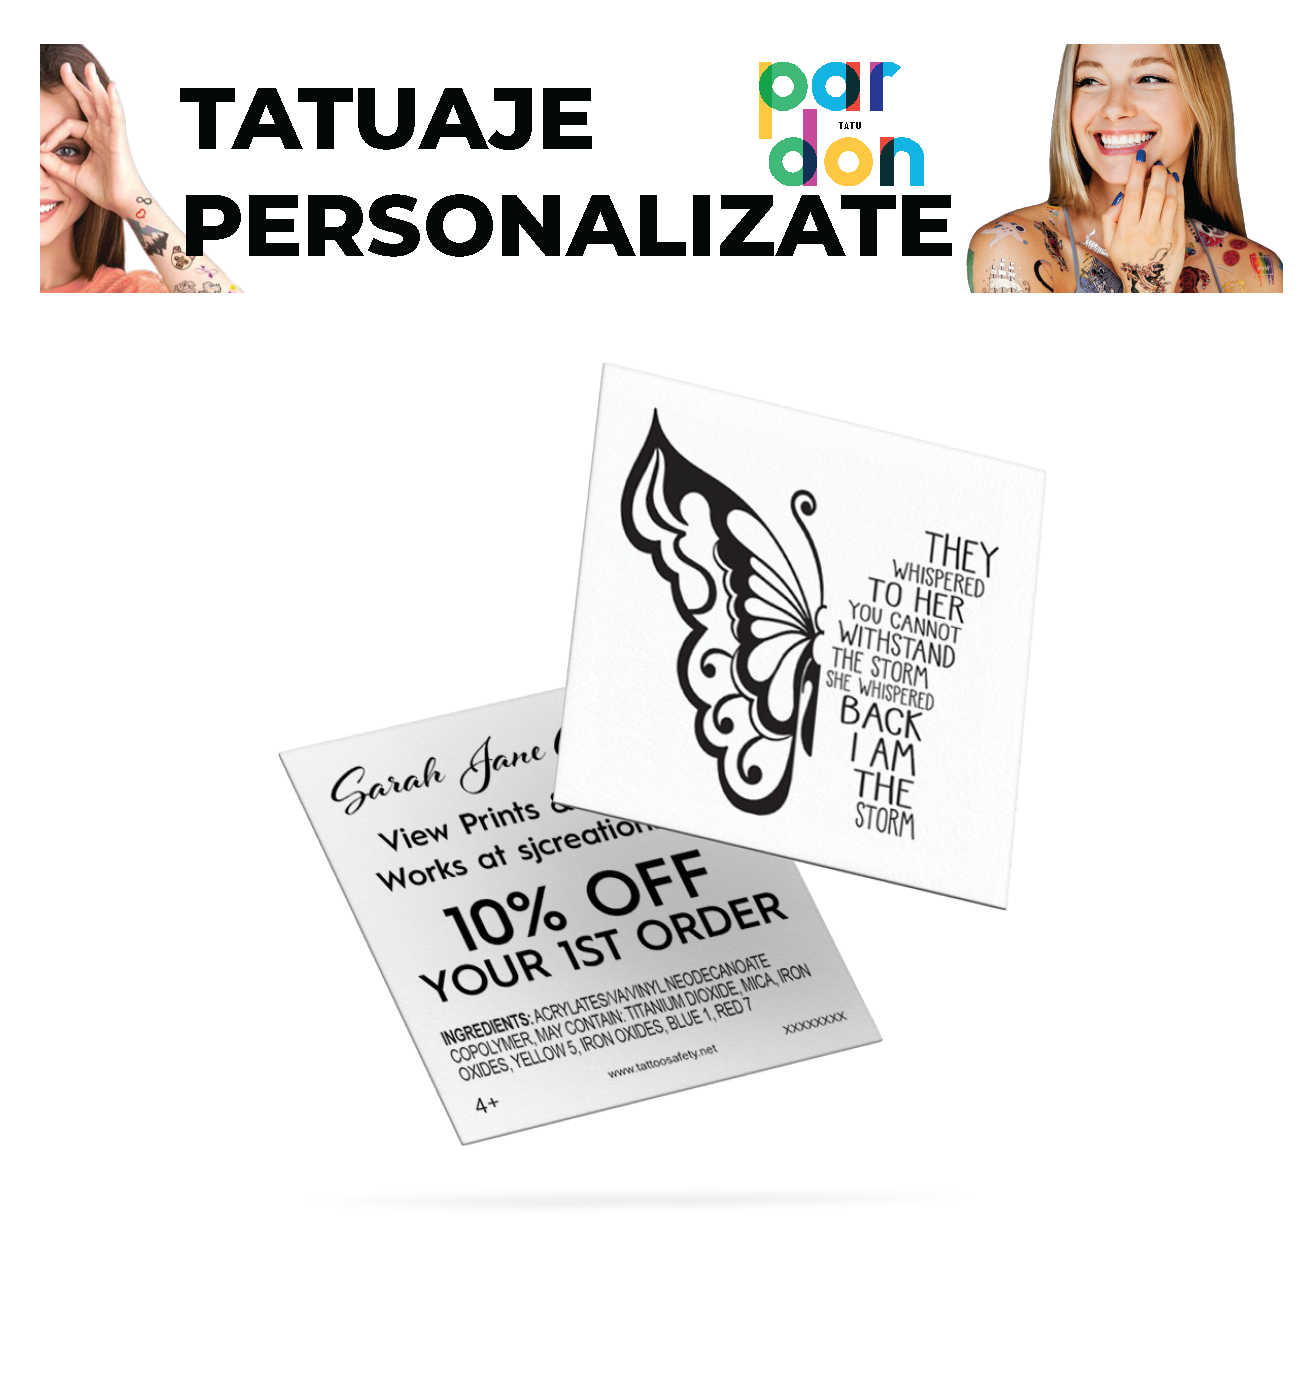 Productie Tatuaje Personalizate - Pardon Tatu - Color - 280 x 190 MM - 1000